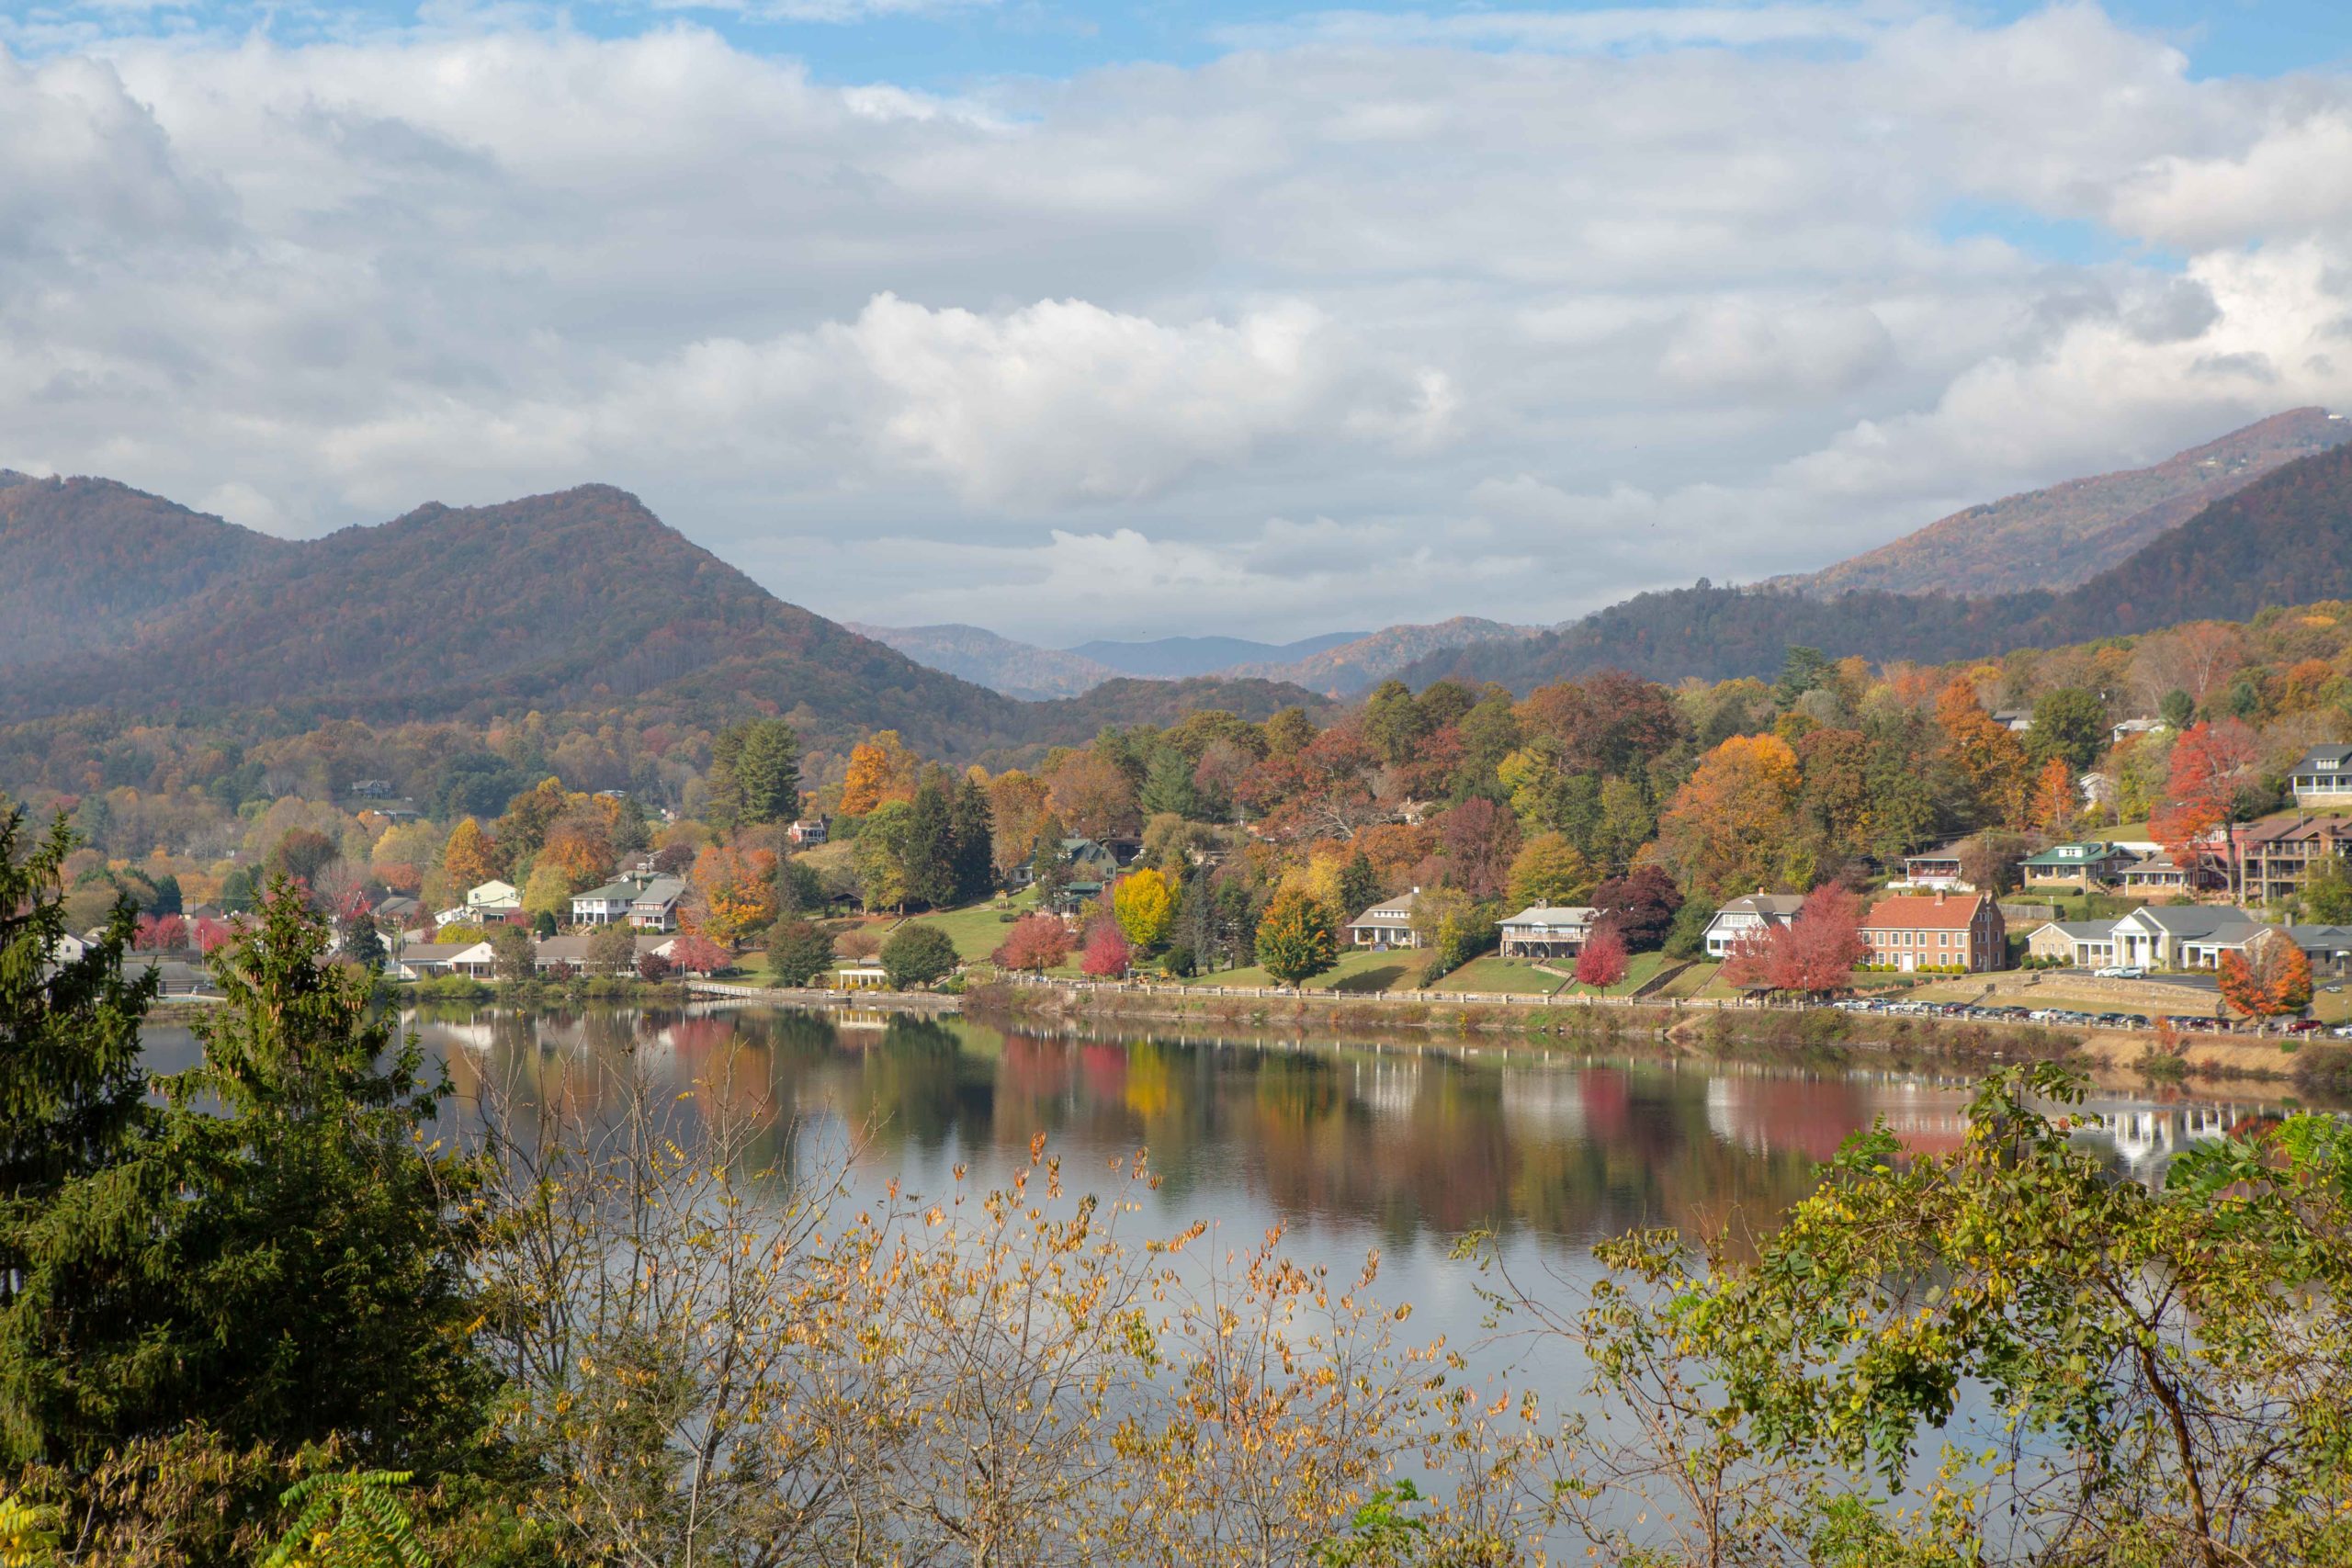 Lake Junaluska aerial photo showing fall foliage colors and the walking bridge